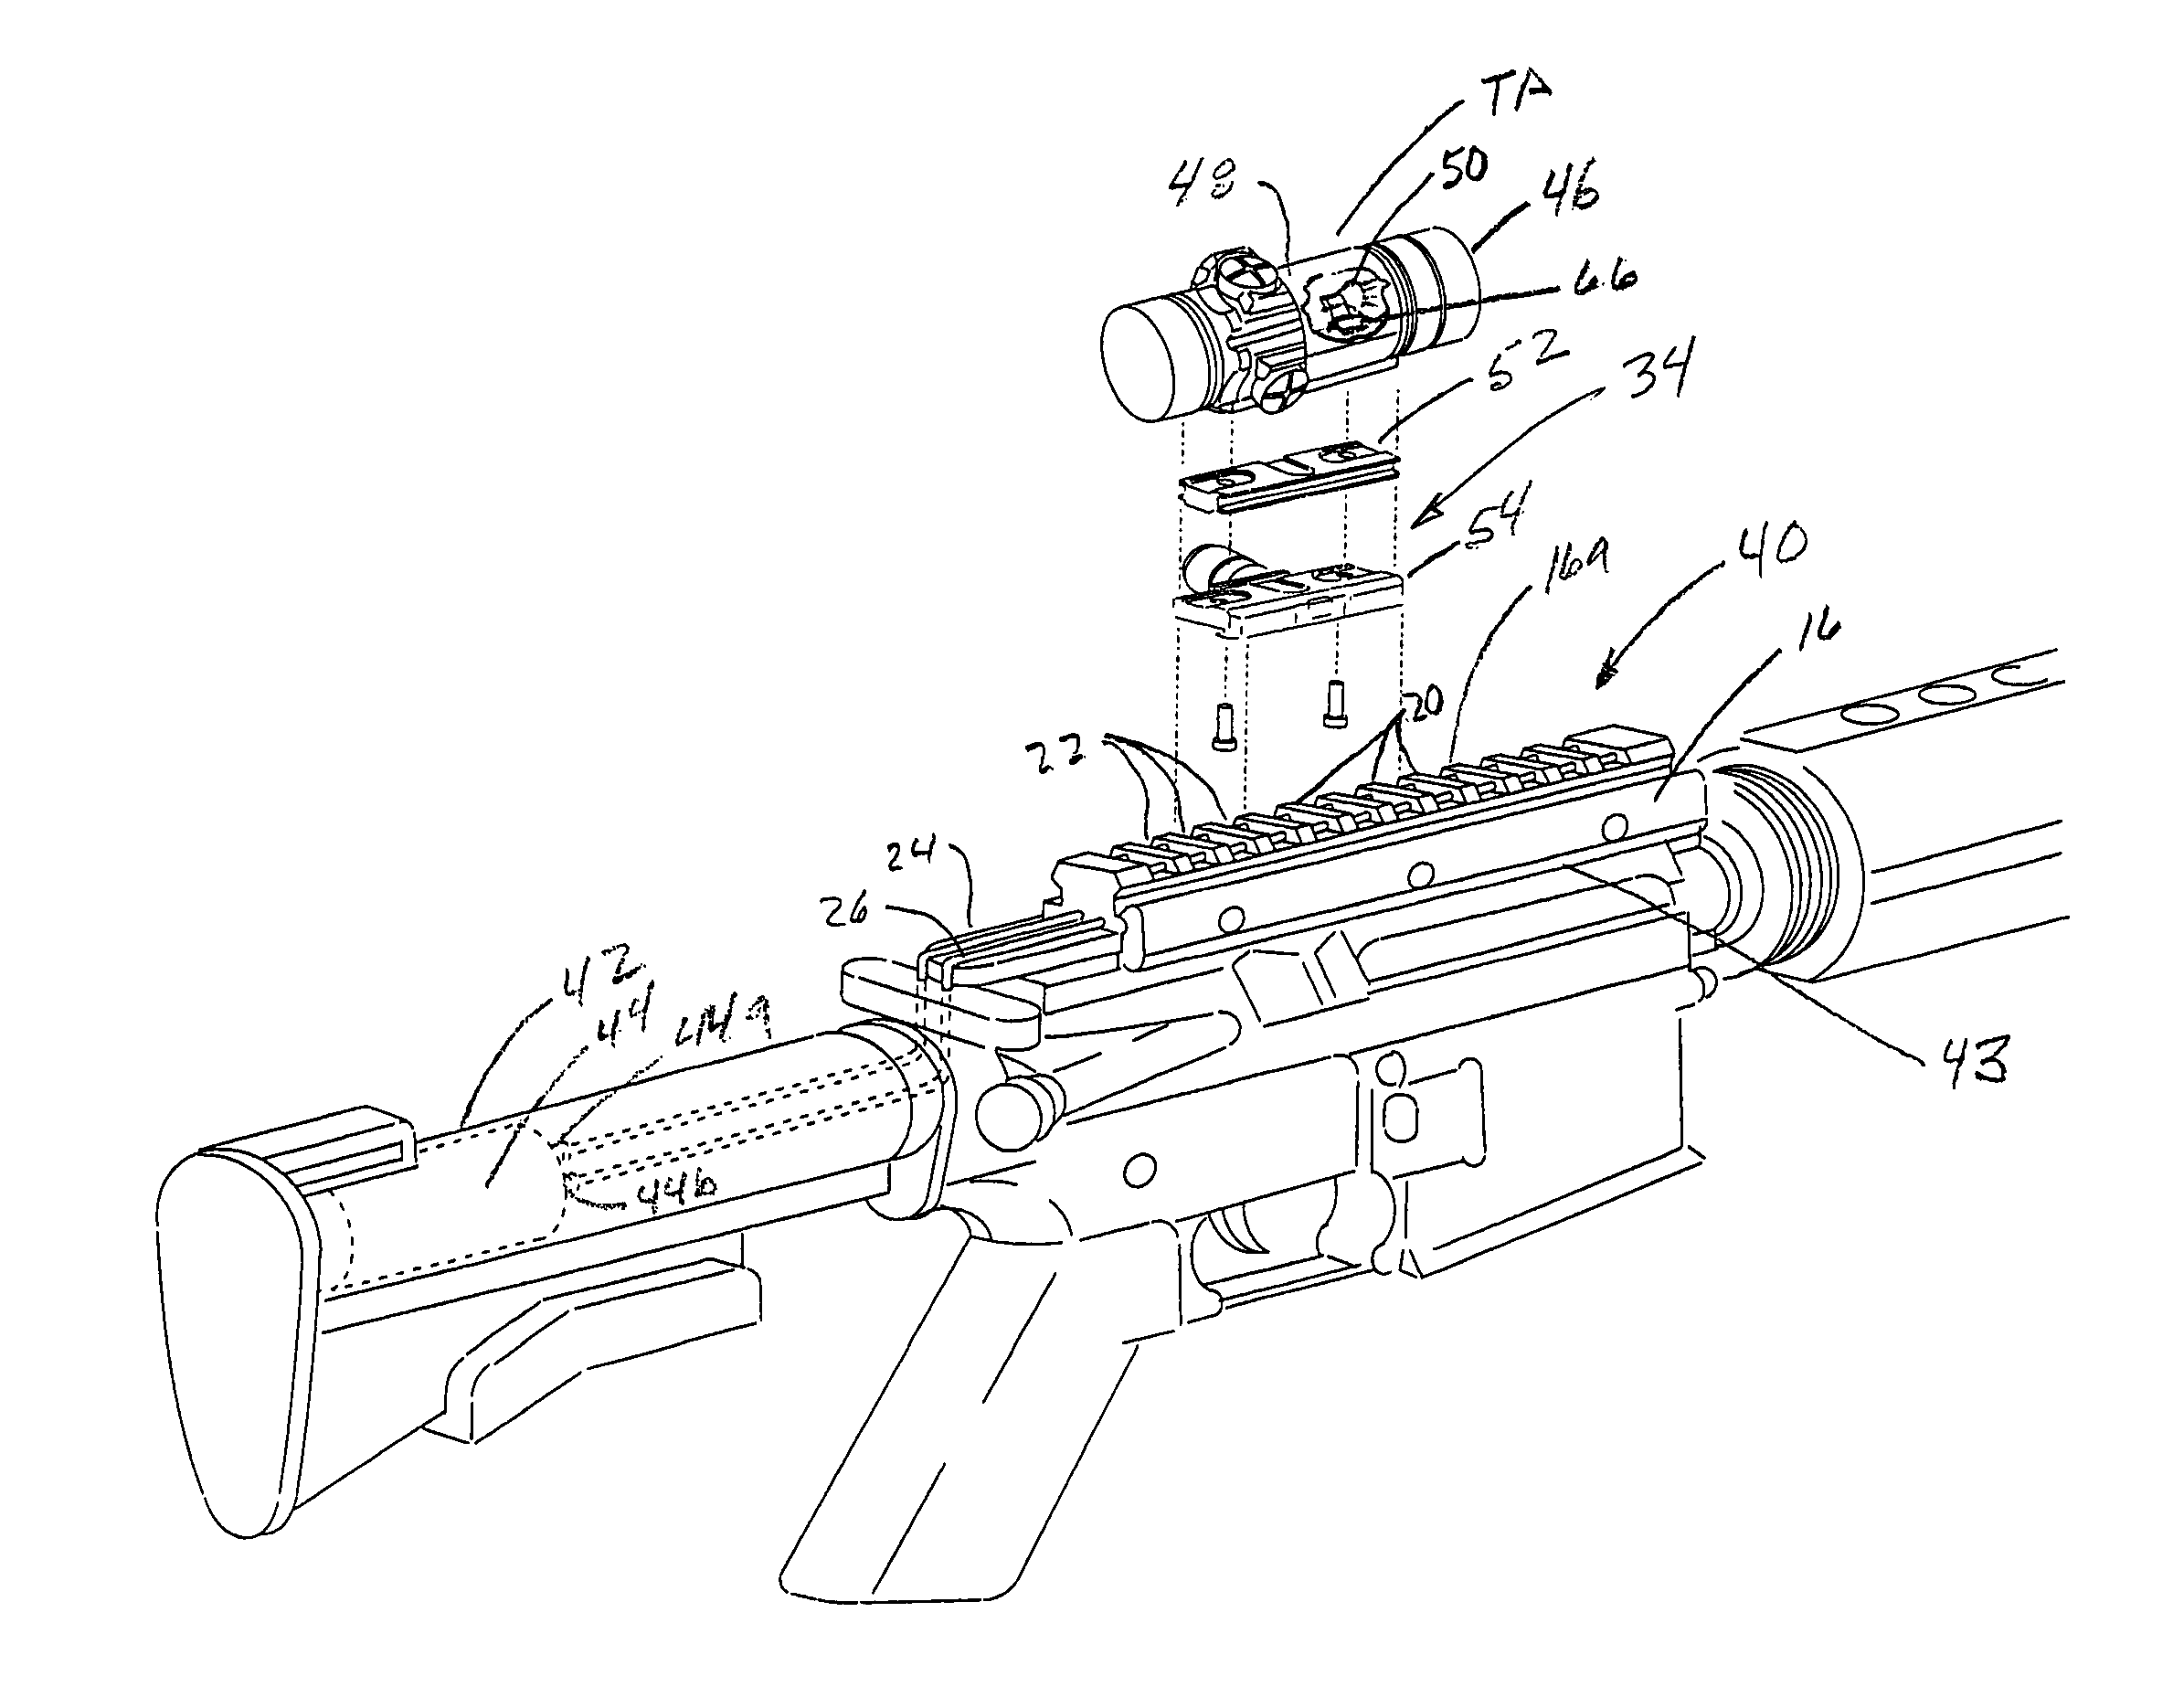 Mounting rail